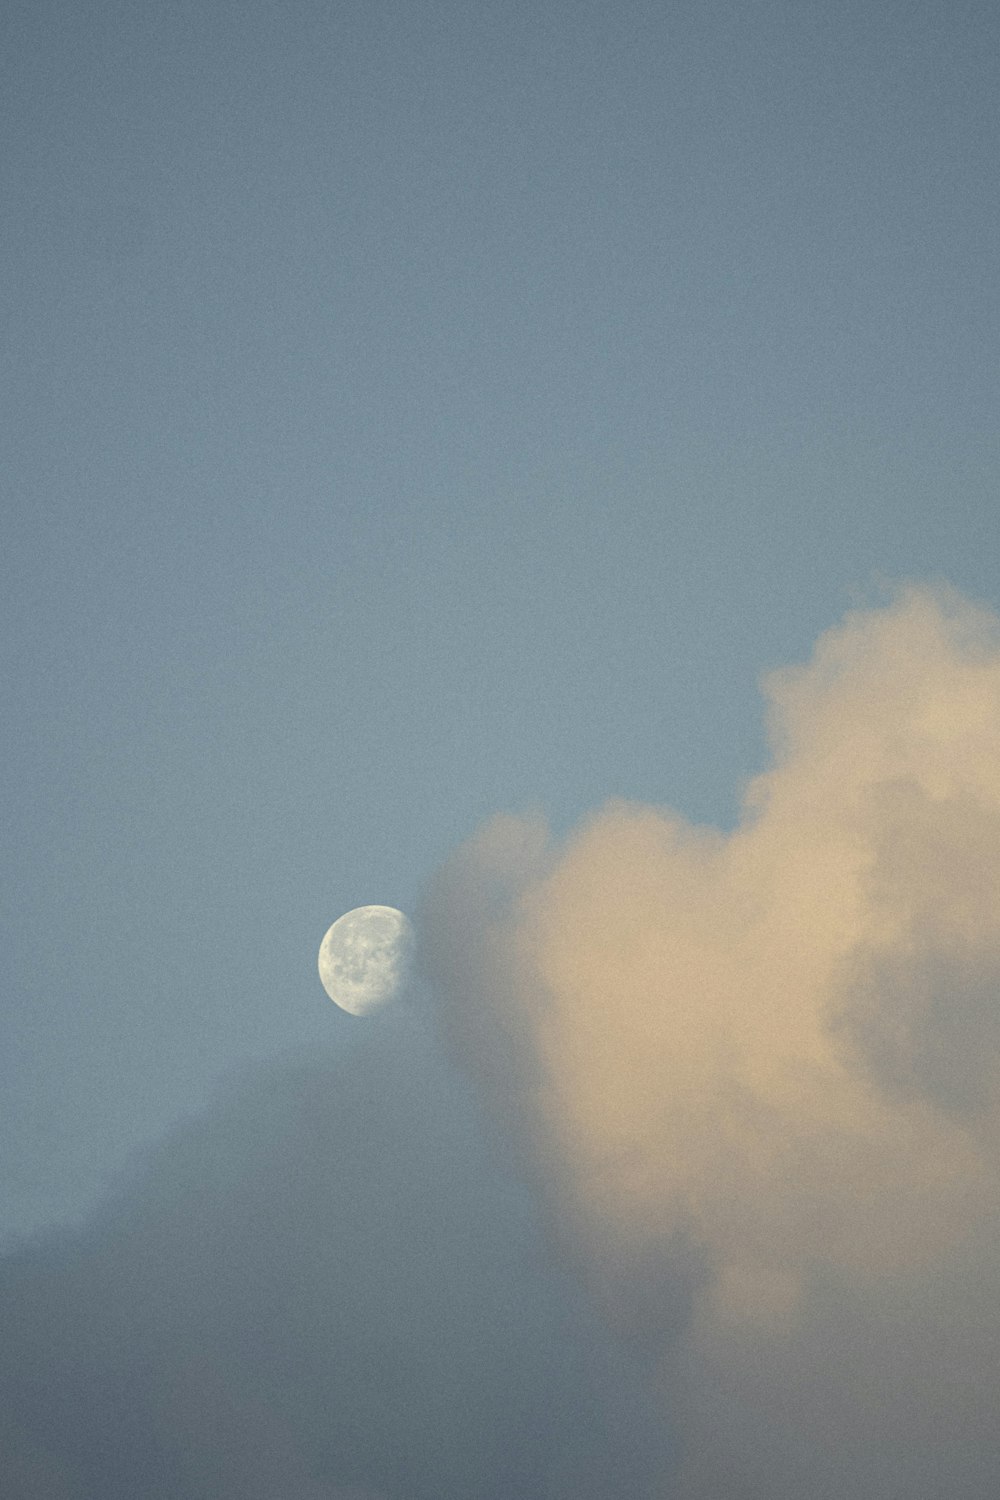 um avião voando no céu com a lua ao fundo